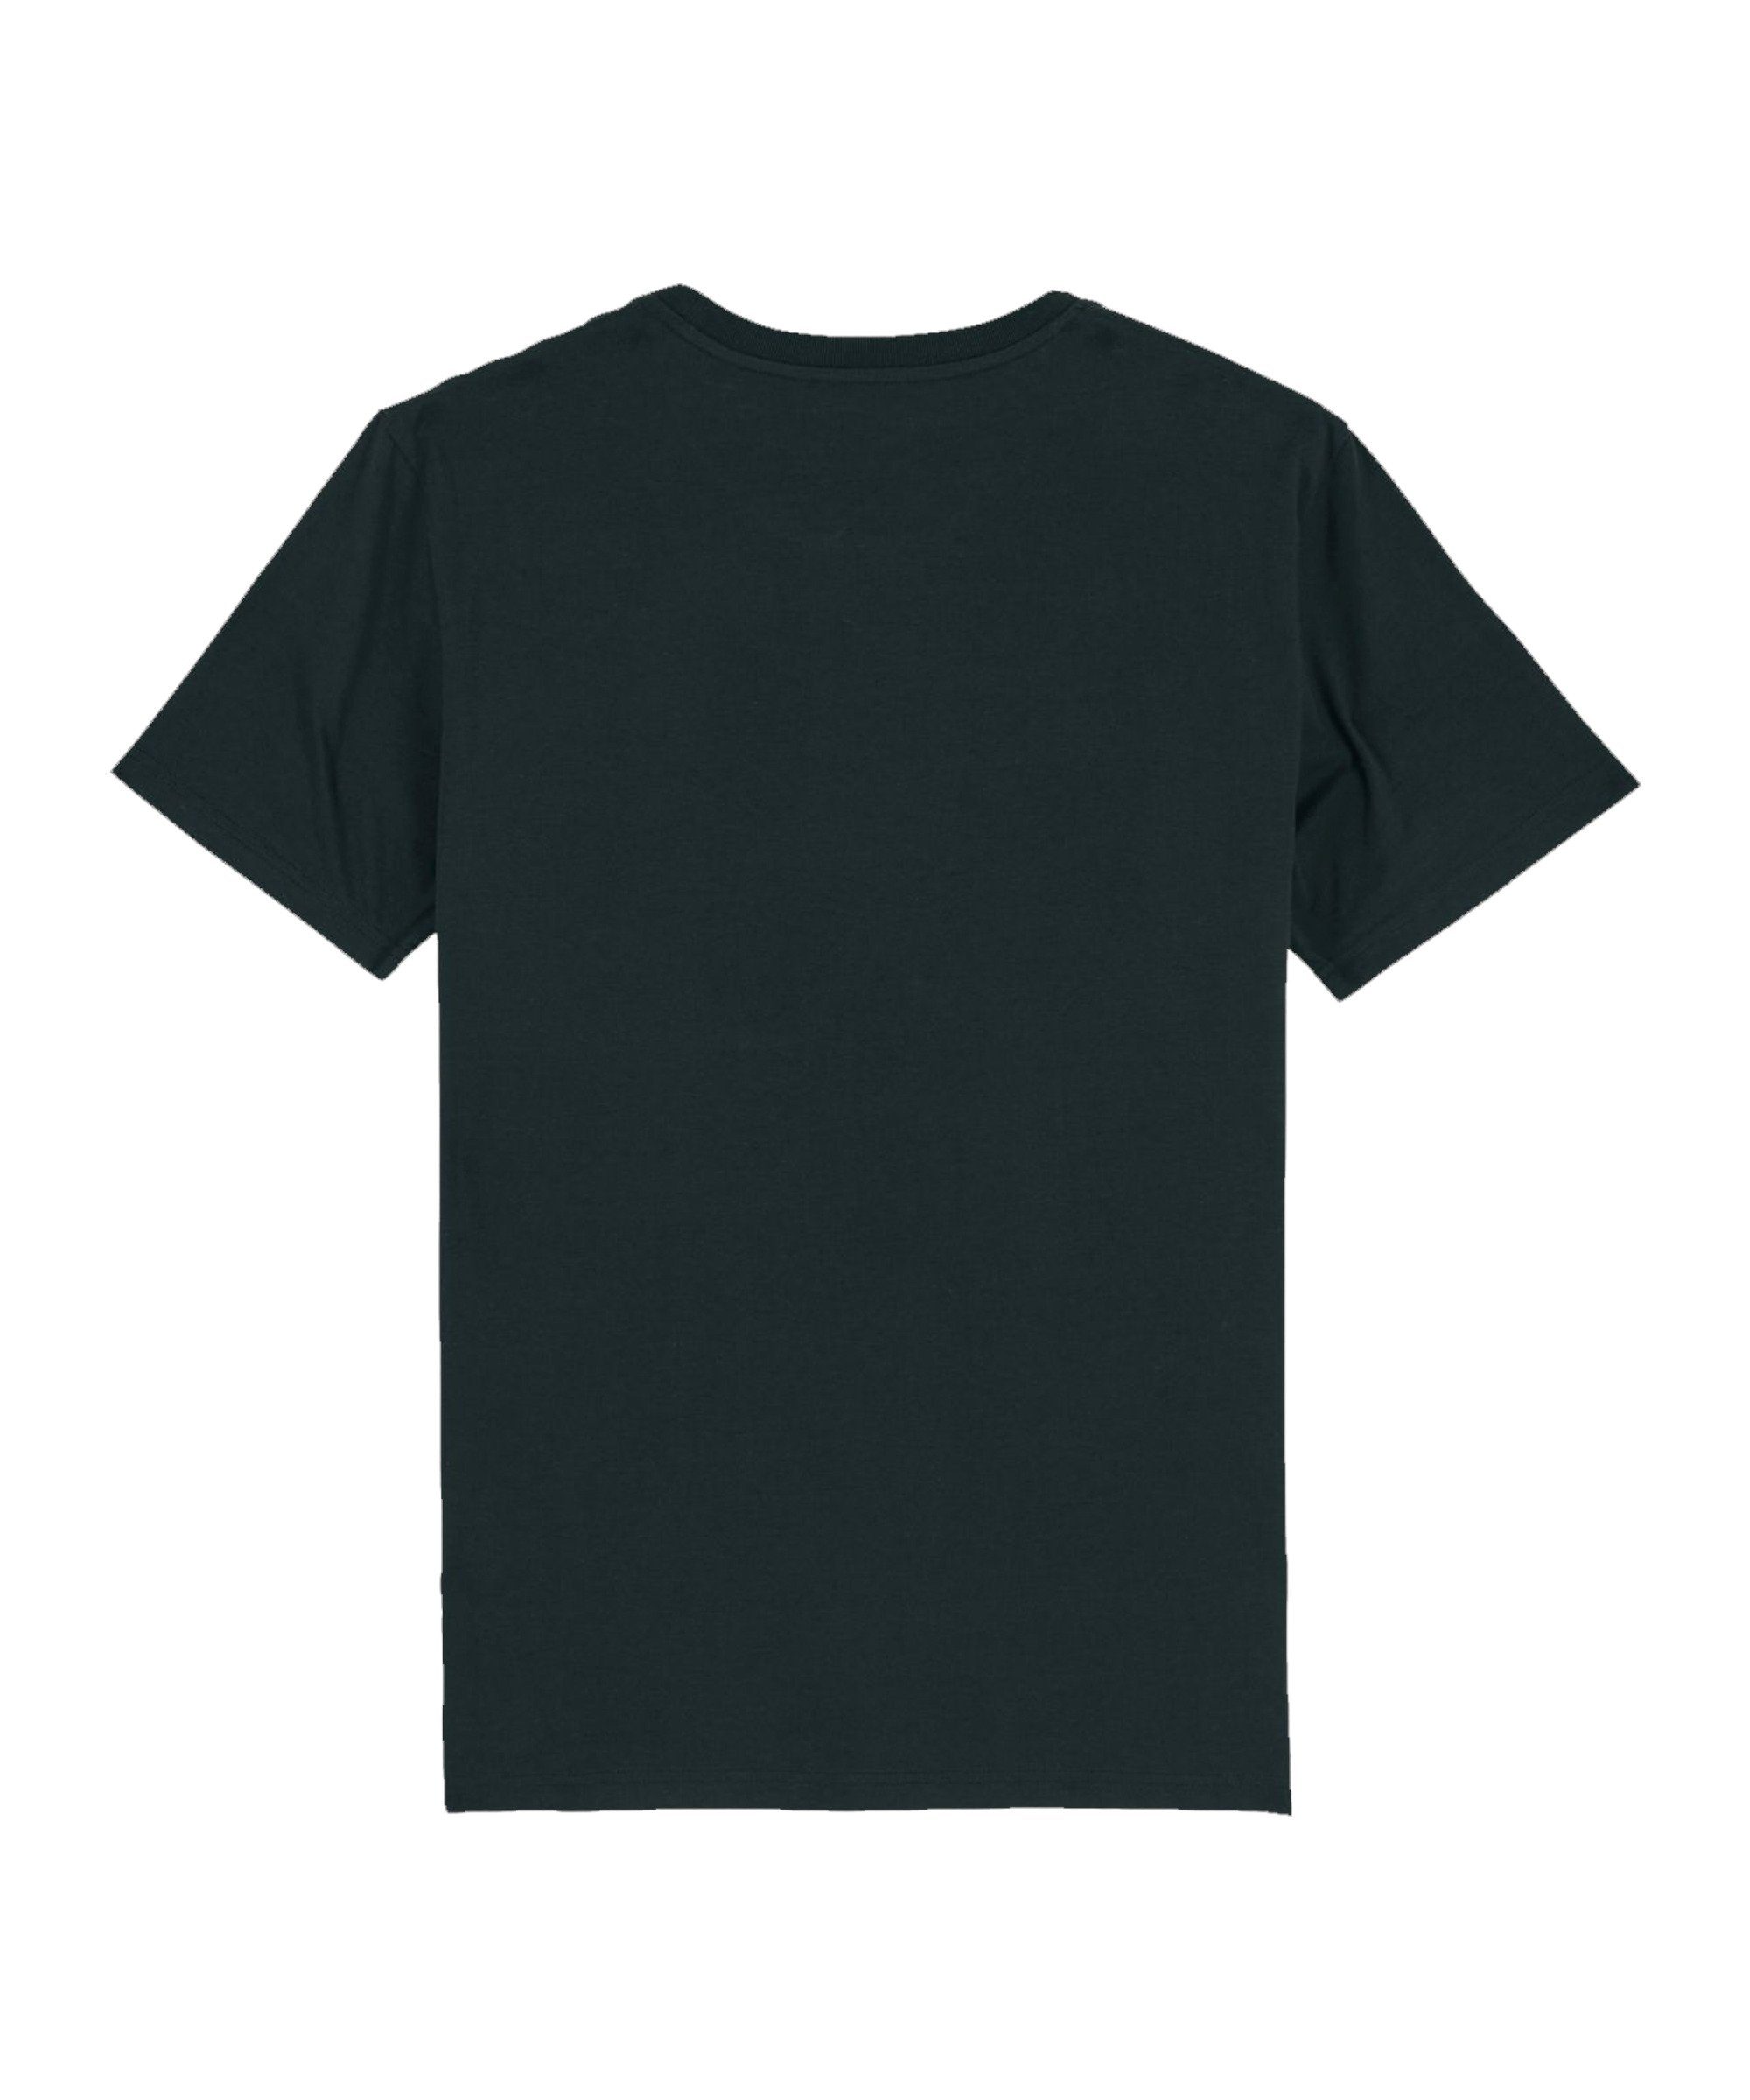 Bolzplatzkind T-Shirt "Friendly" T-Shirt Sand Produkt Nachhaltiges schwarz